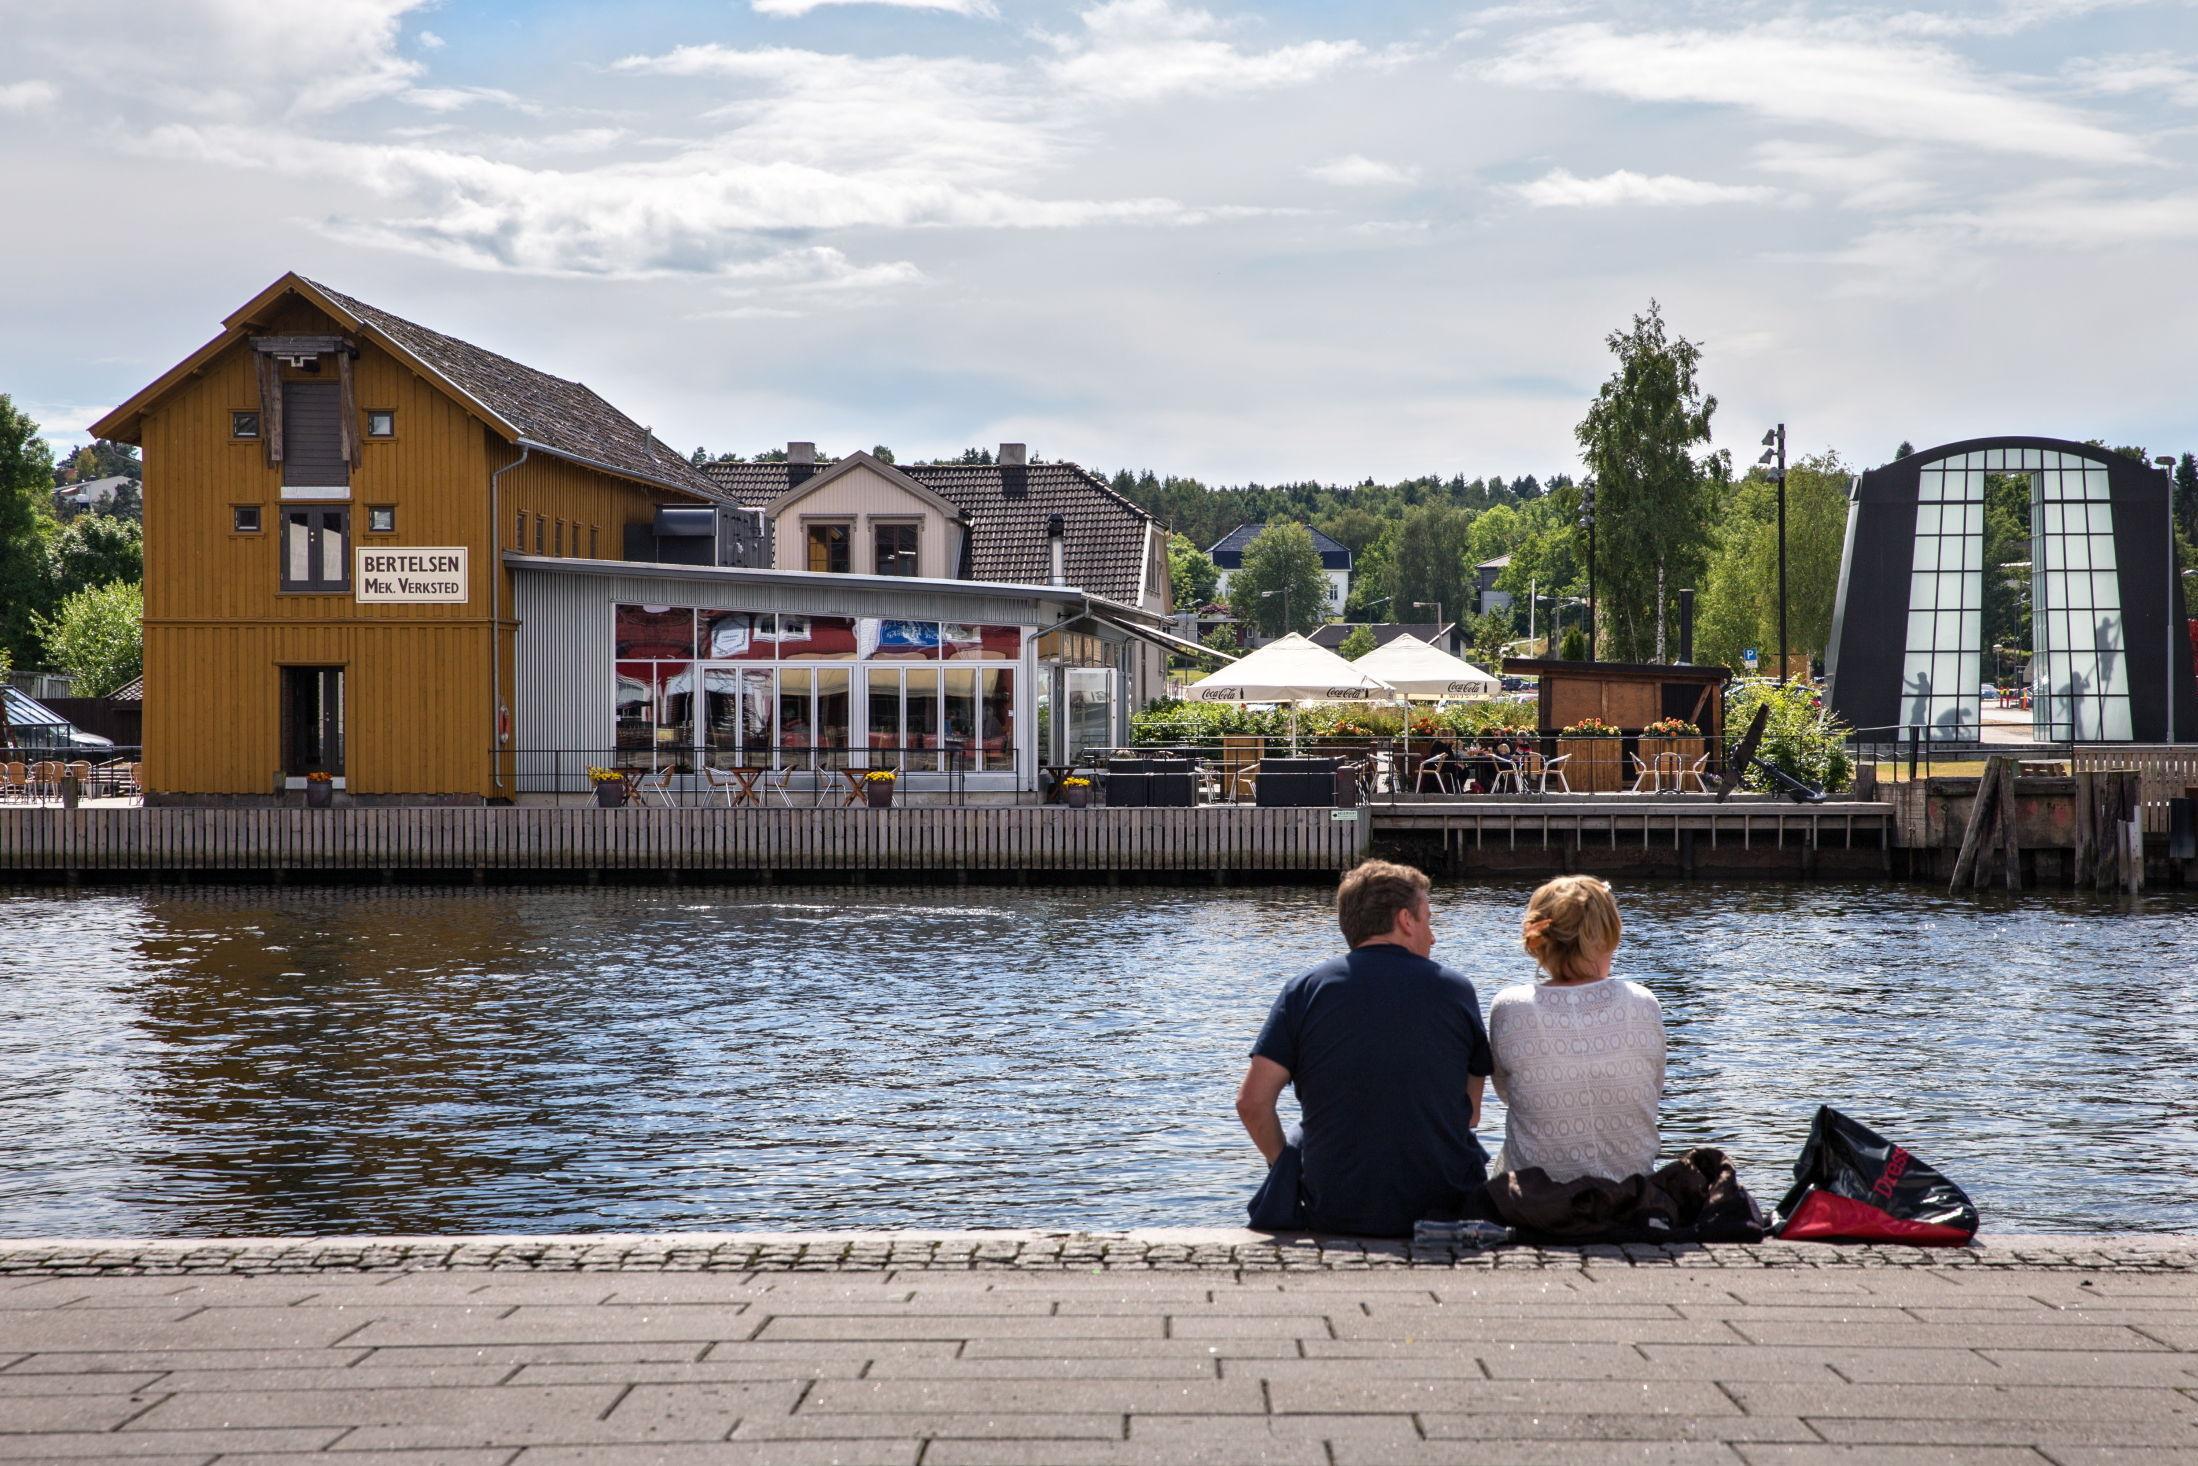 SOMMERFØLELSE: Restauranten ligger idyllisk til langs bryggekanten. Foto: Gisle Oddstad/VG